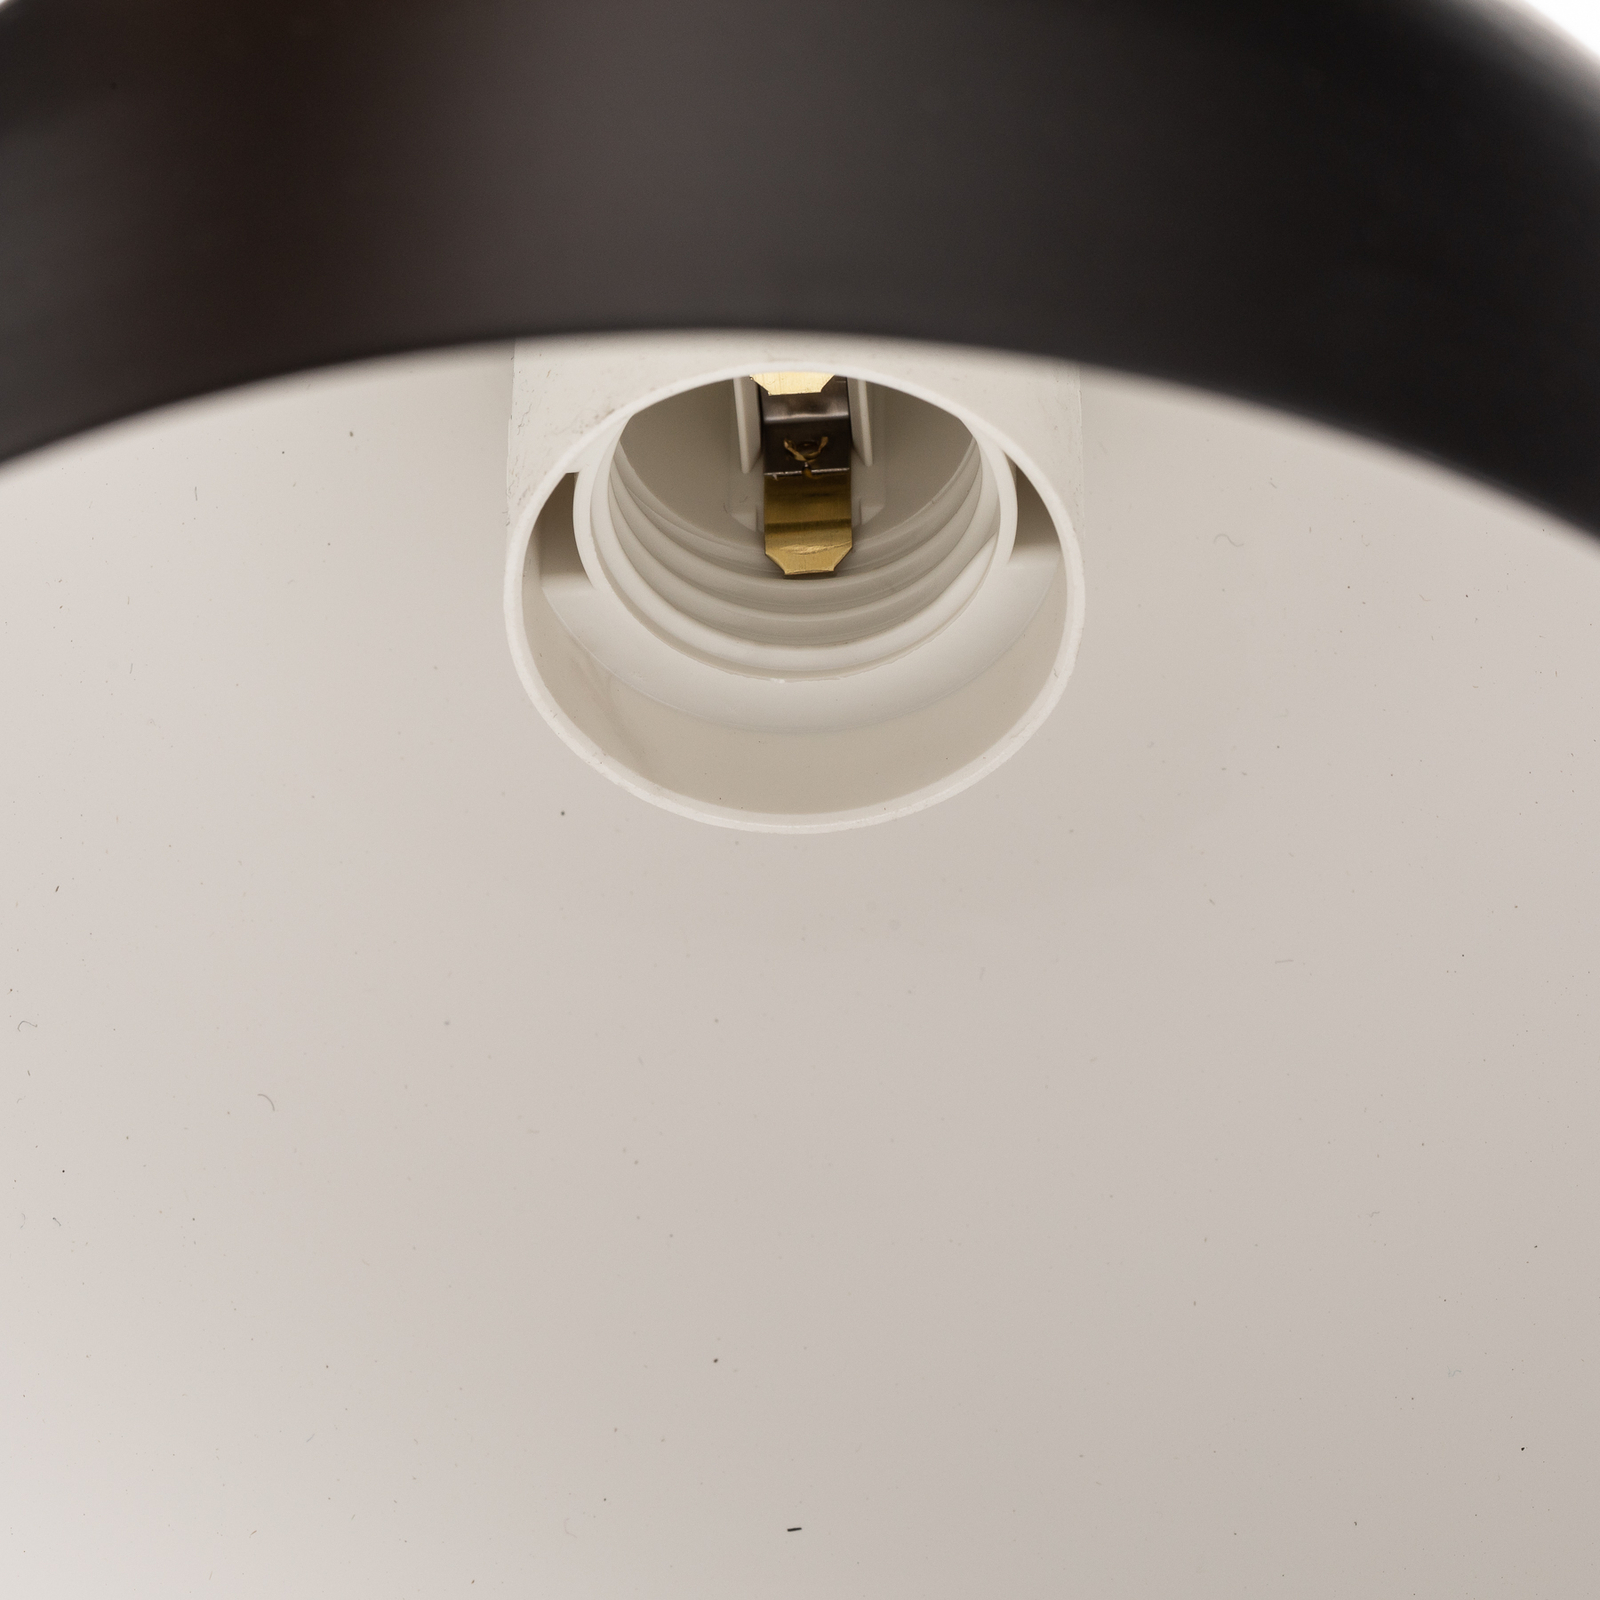 Metal pendant light Nanu black 1-bulb